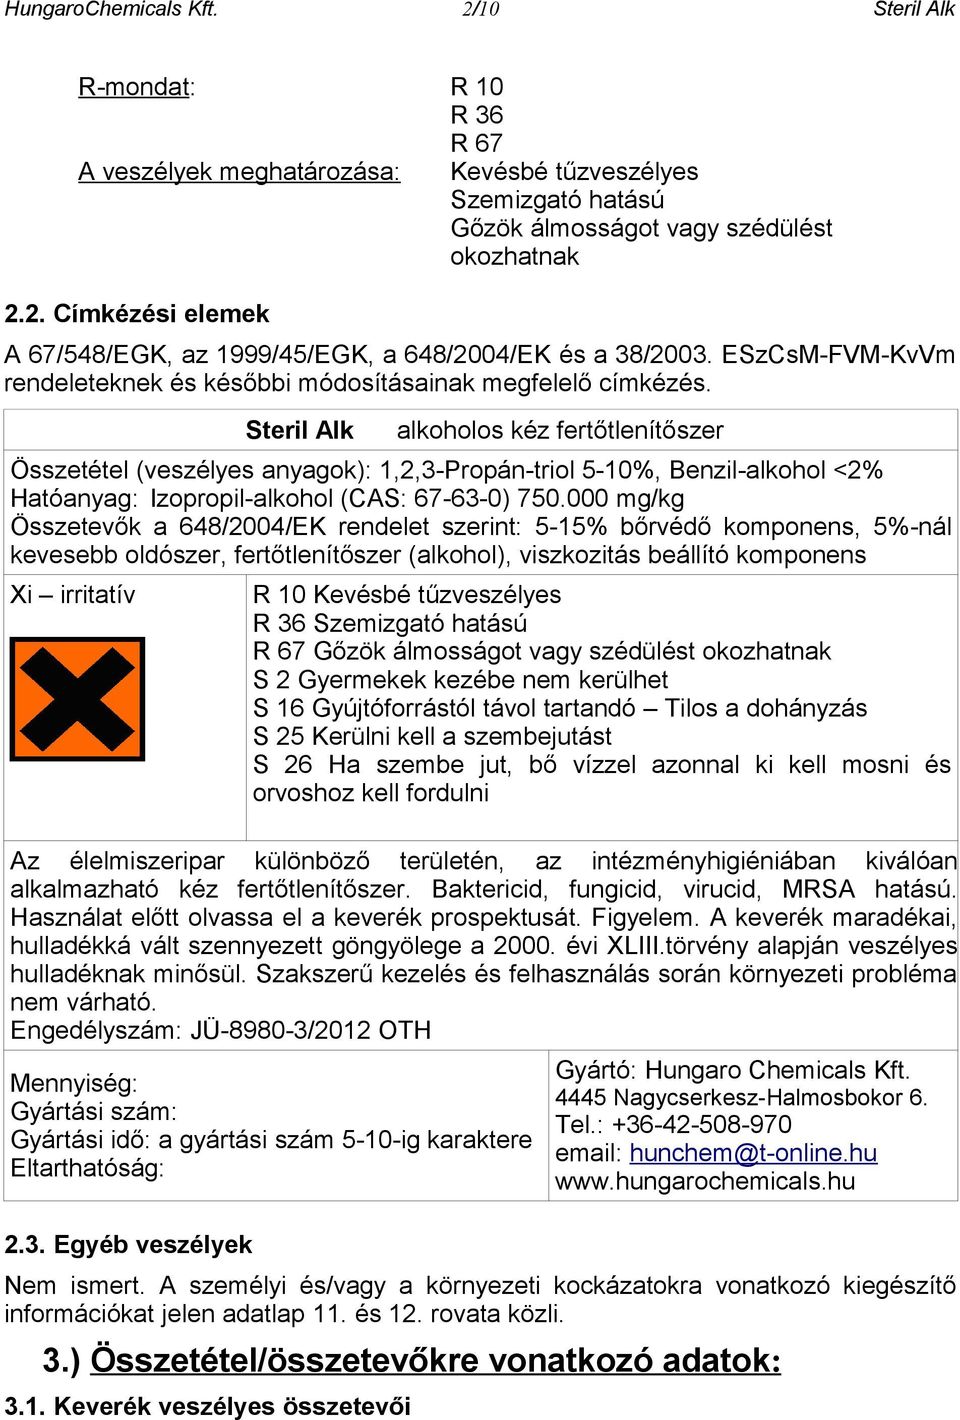 Steril Alk alkoholos kéz fertőtlenítőszer Összetétel (veszélyes anyagok): 1,2,3-Propán-triol 5-10%, Benzil-alkohol <2% Hatóanyag: Izopropil-alkohol (CAS: 67-63-0) 750.